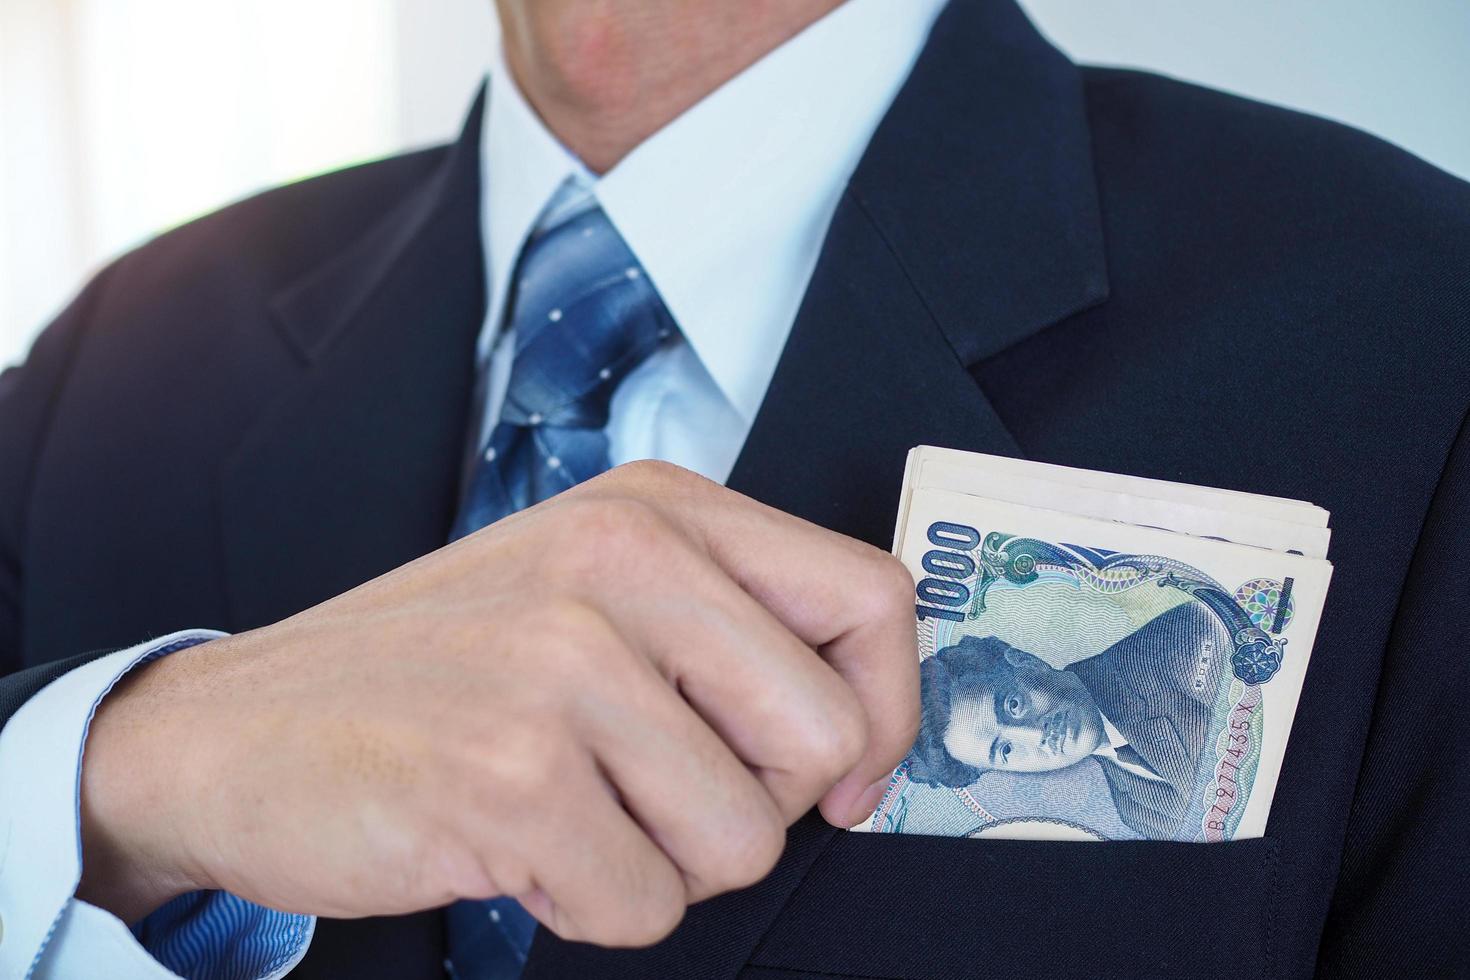 notas de ienes na bolsa de um empresário. dinheiro recebido ilegalmente, dinheiro de suborno e conceitos de fraude foto